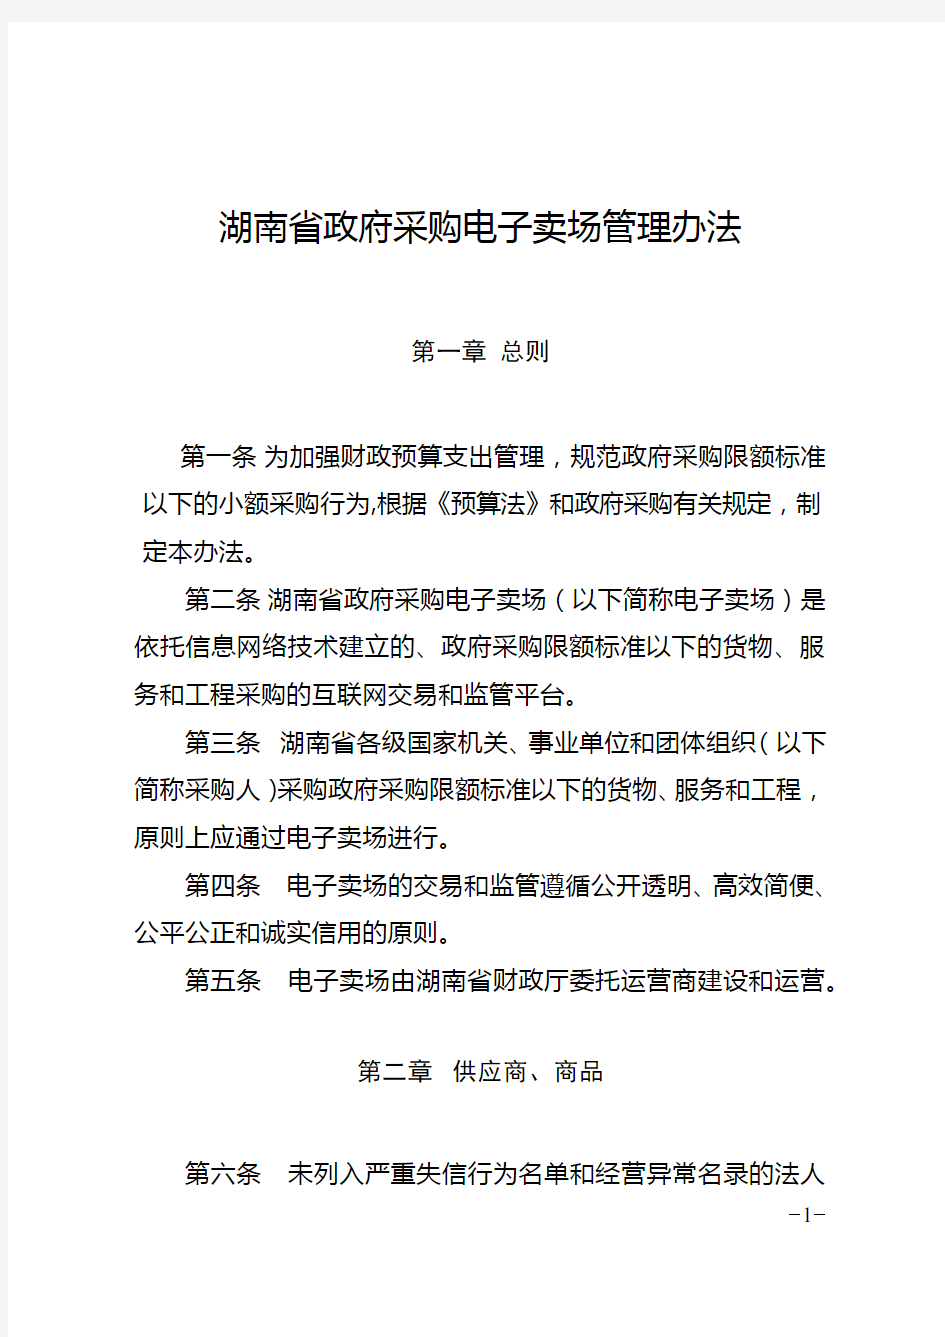 4、湖南省政府采购电子卖场管理办法